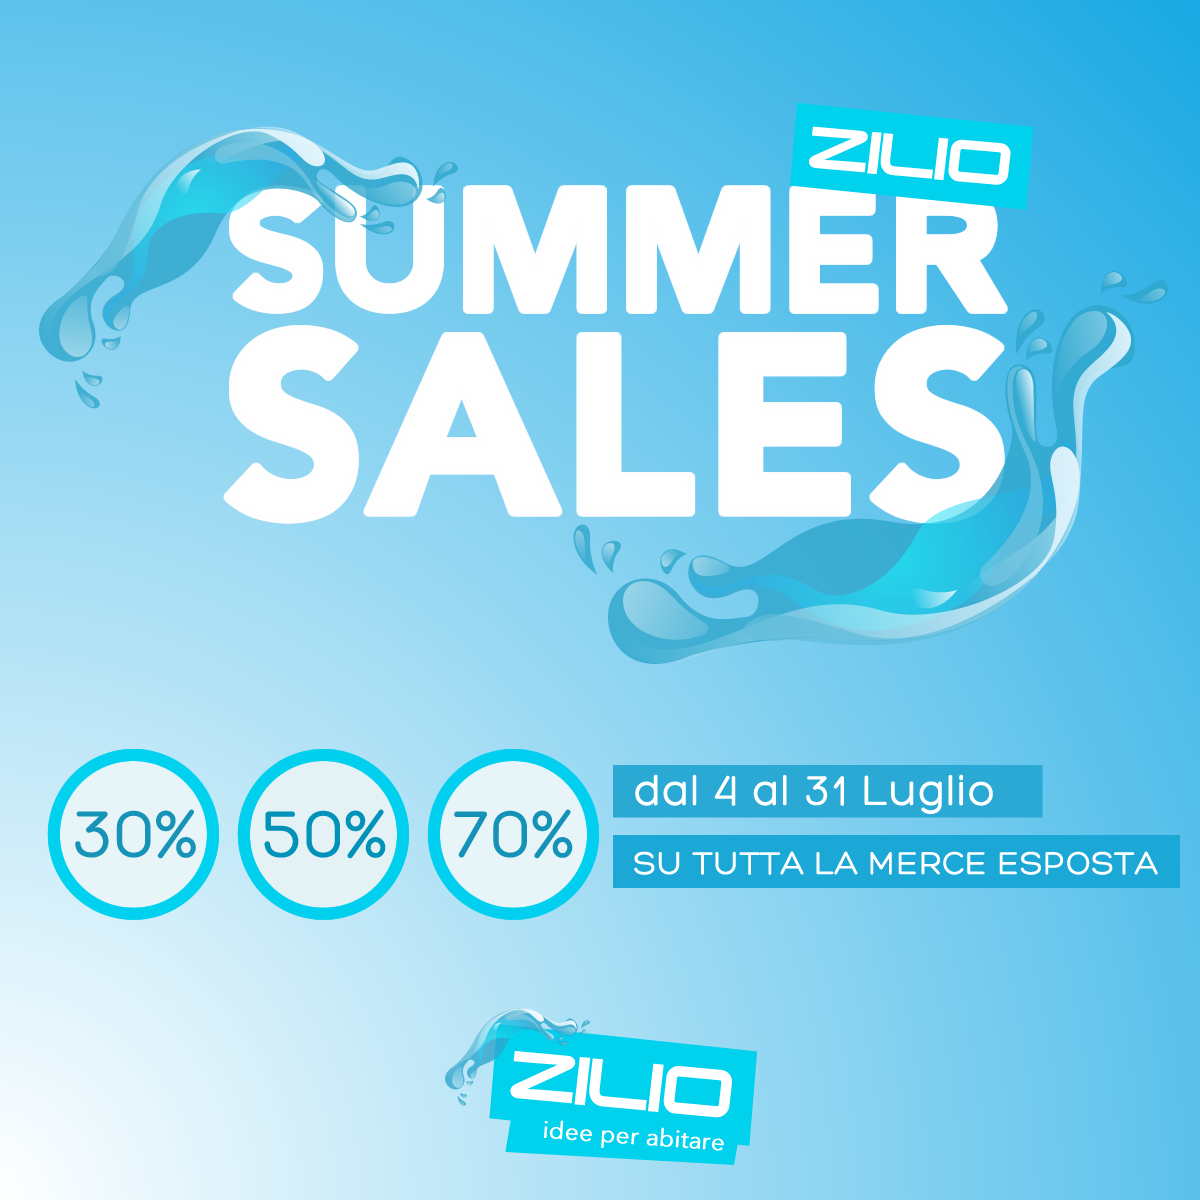 Zilio Summer Sales